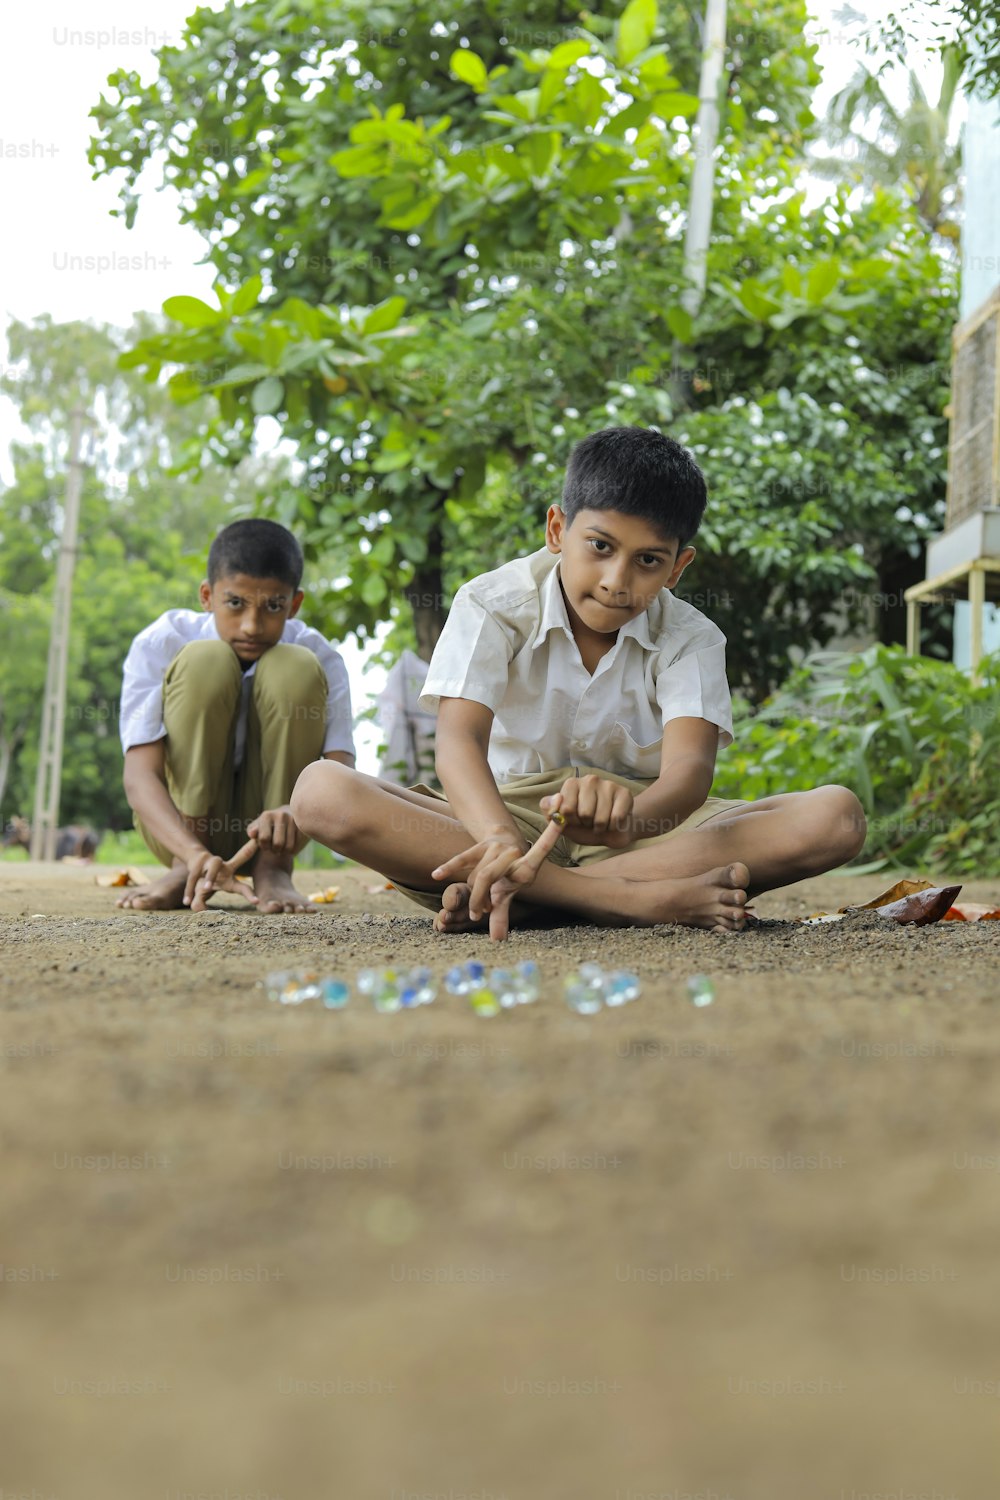 Enfant indien jouant avec des billes de verre qui est un vieux jeu de village indien. Les billes de verre sont également appelées Kancha en langue hindi.